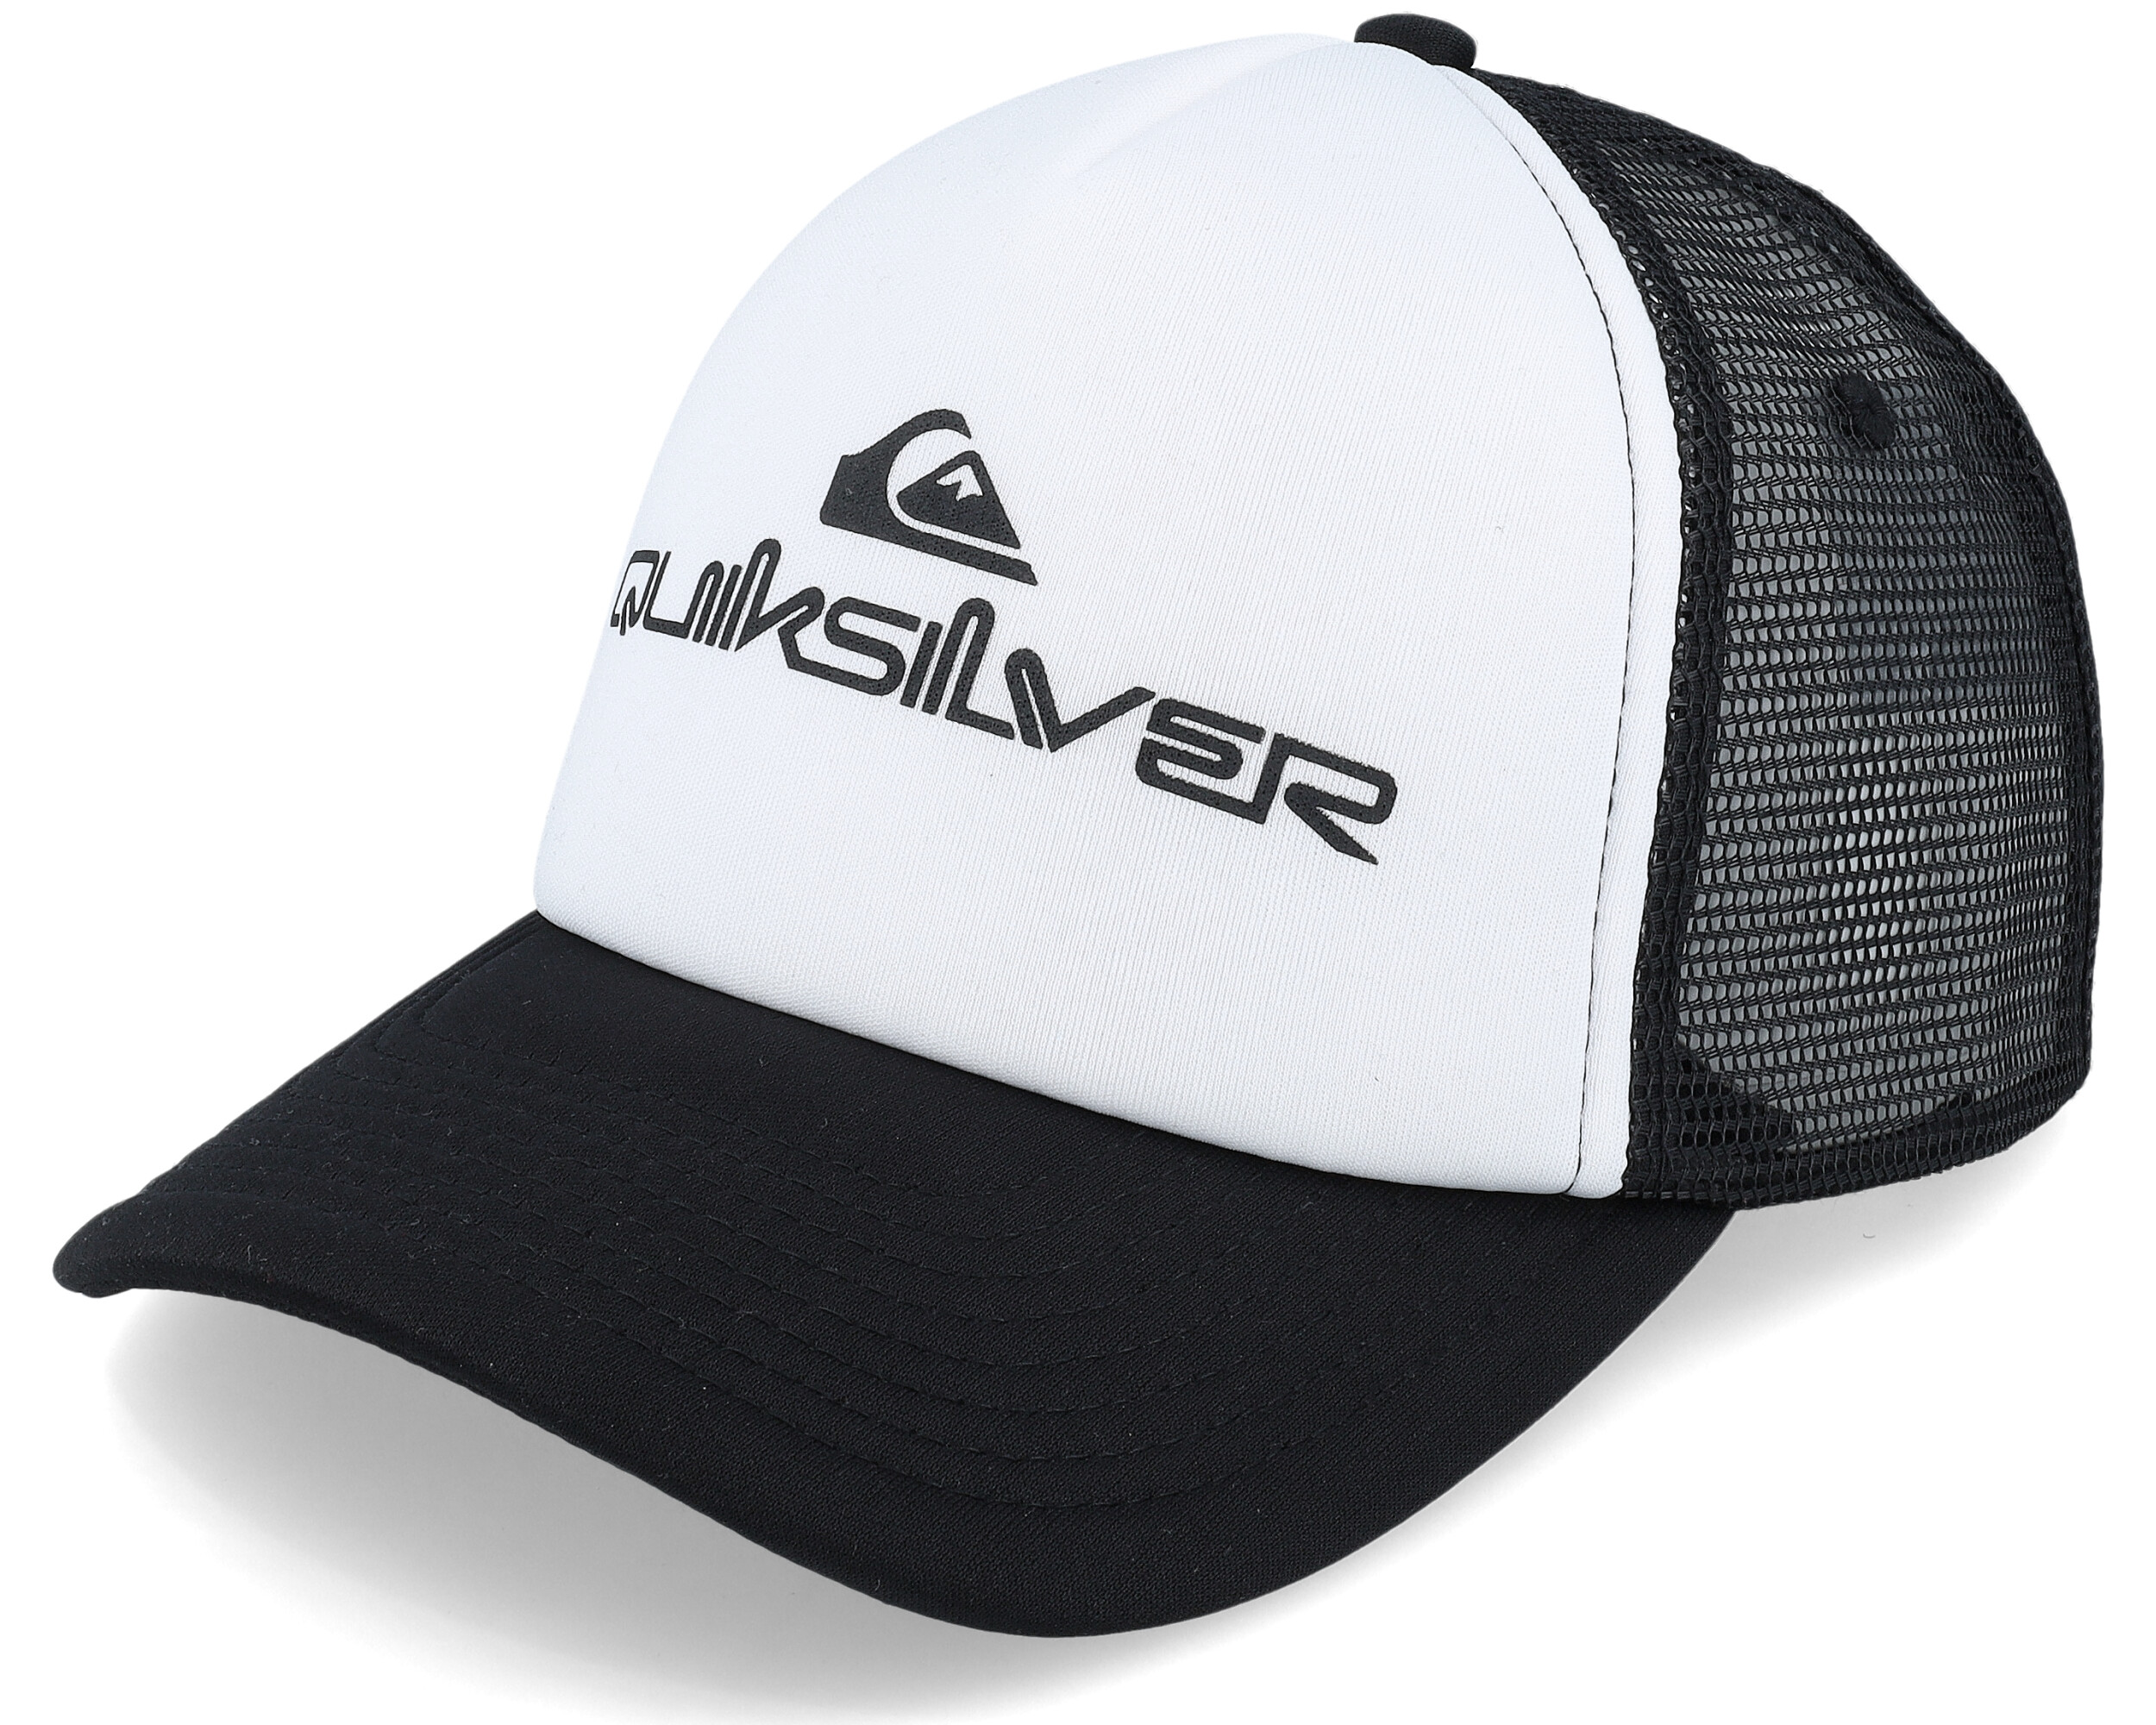 Quiksilver White/Black Trucker cap Omnistack -